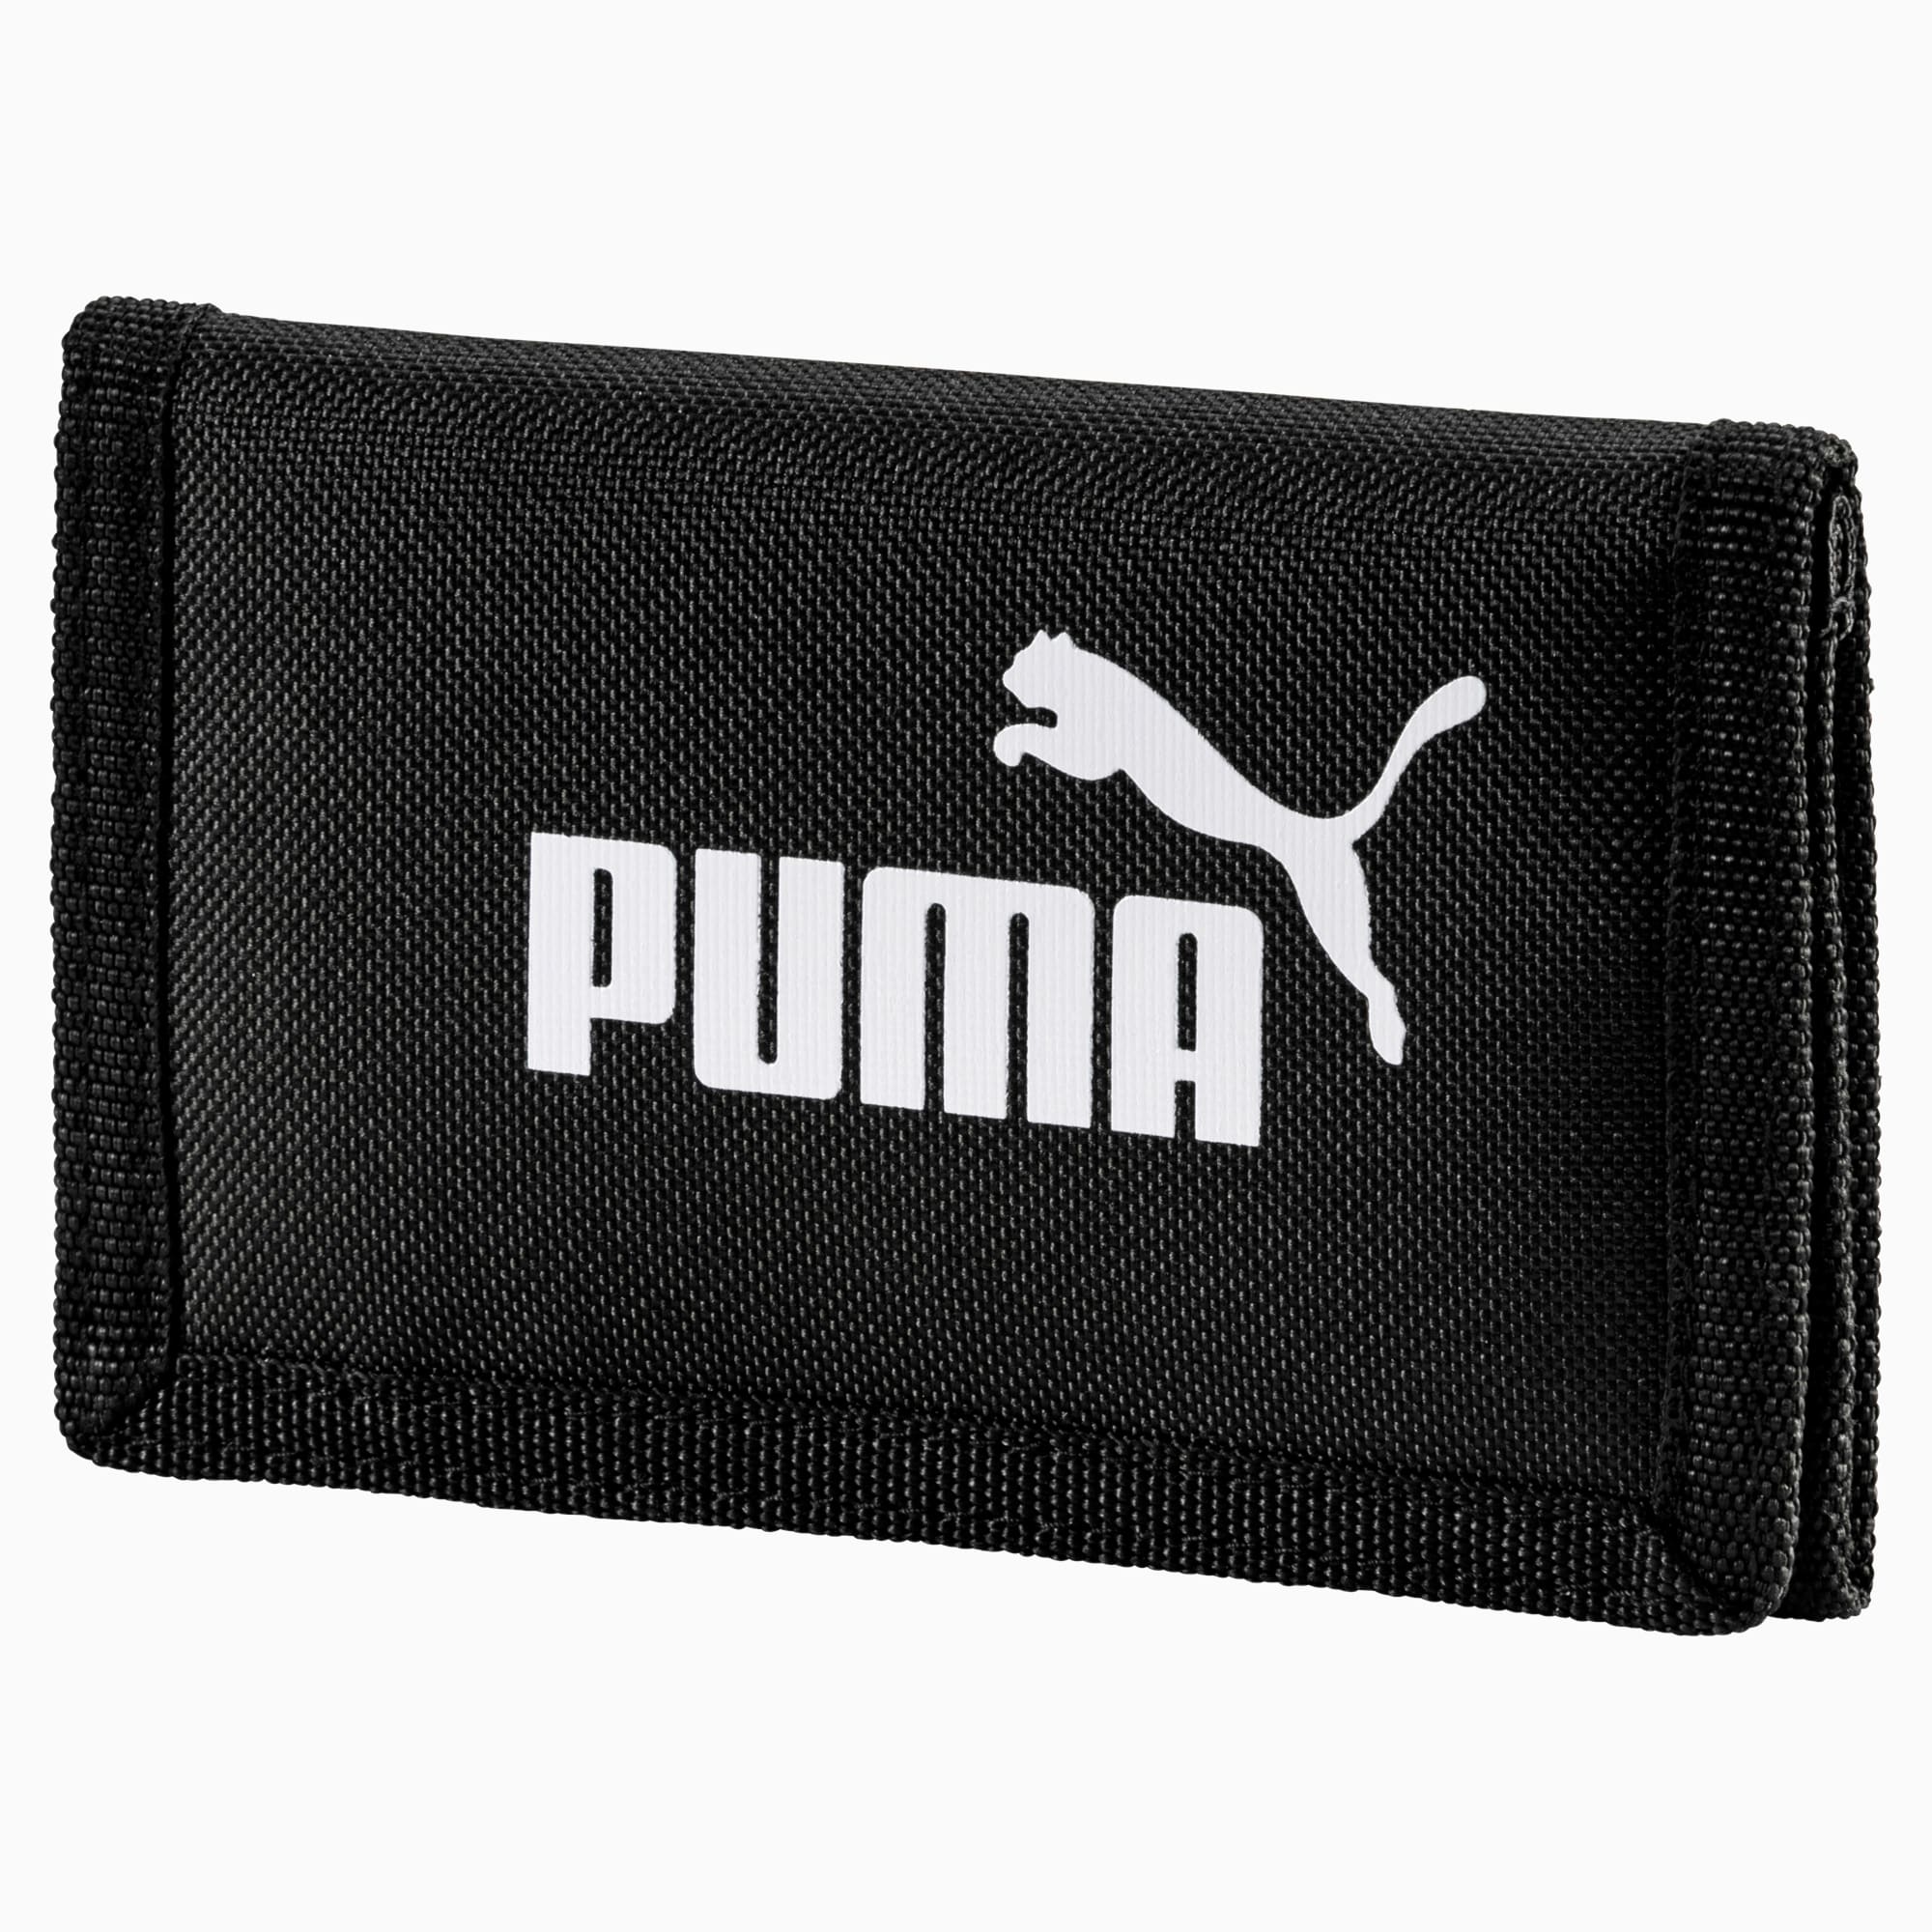 Puma Phase Siyah Cüzdan (075617-01)